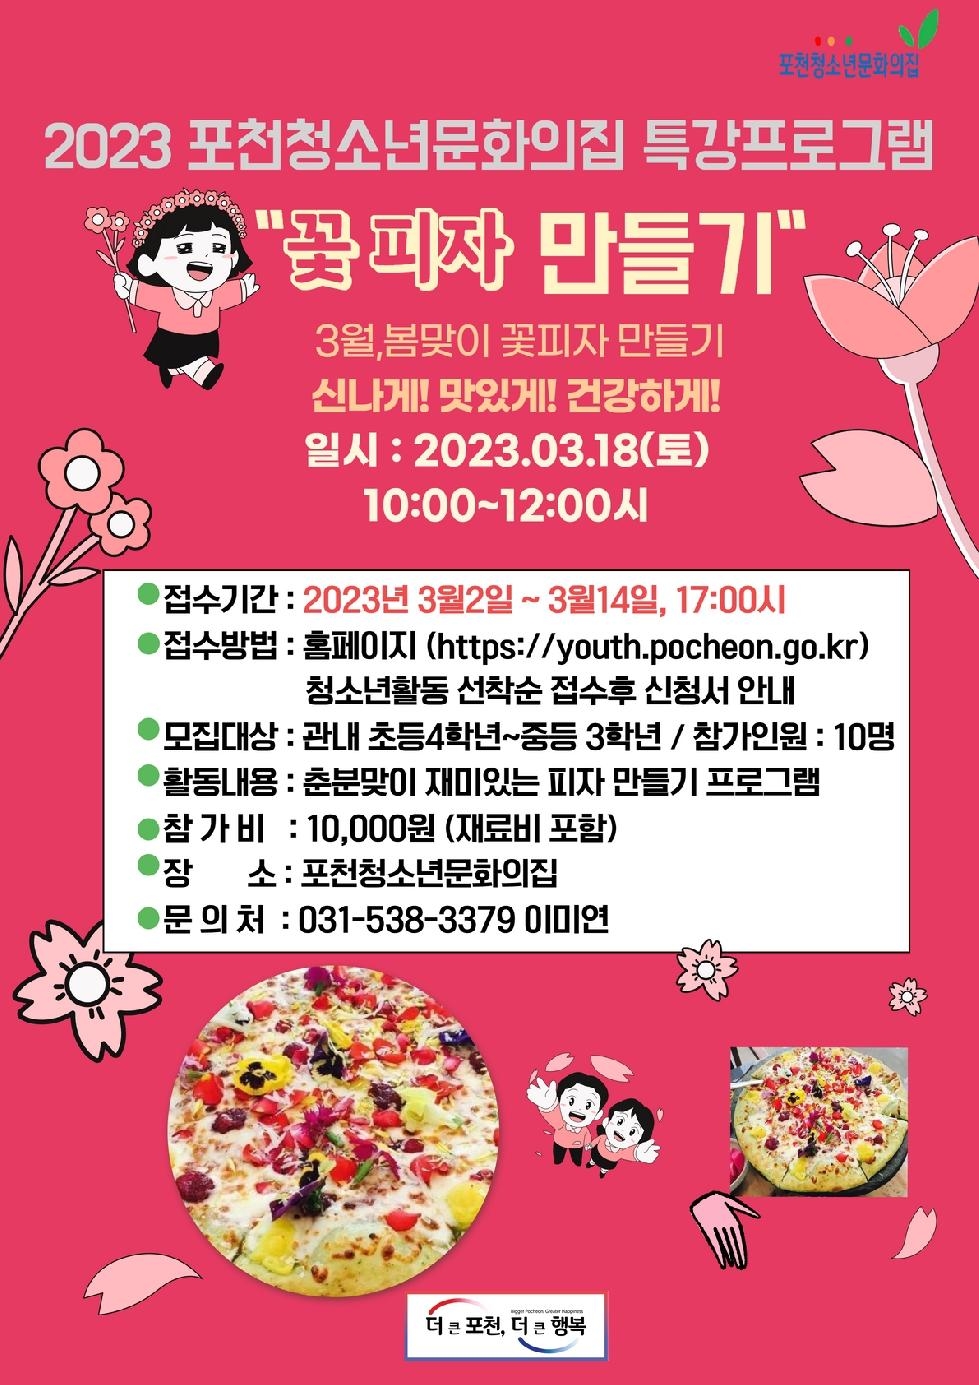 2023년 포천청소년문화의집 특강프로그램‘꽃피자 만들기’참가자 모집